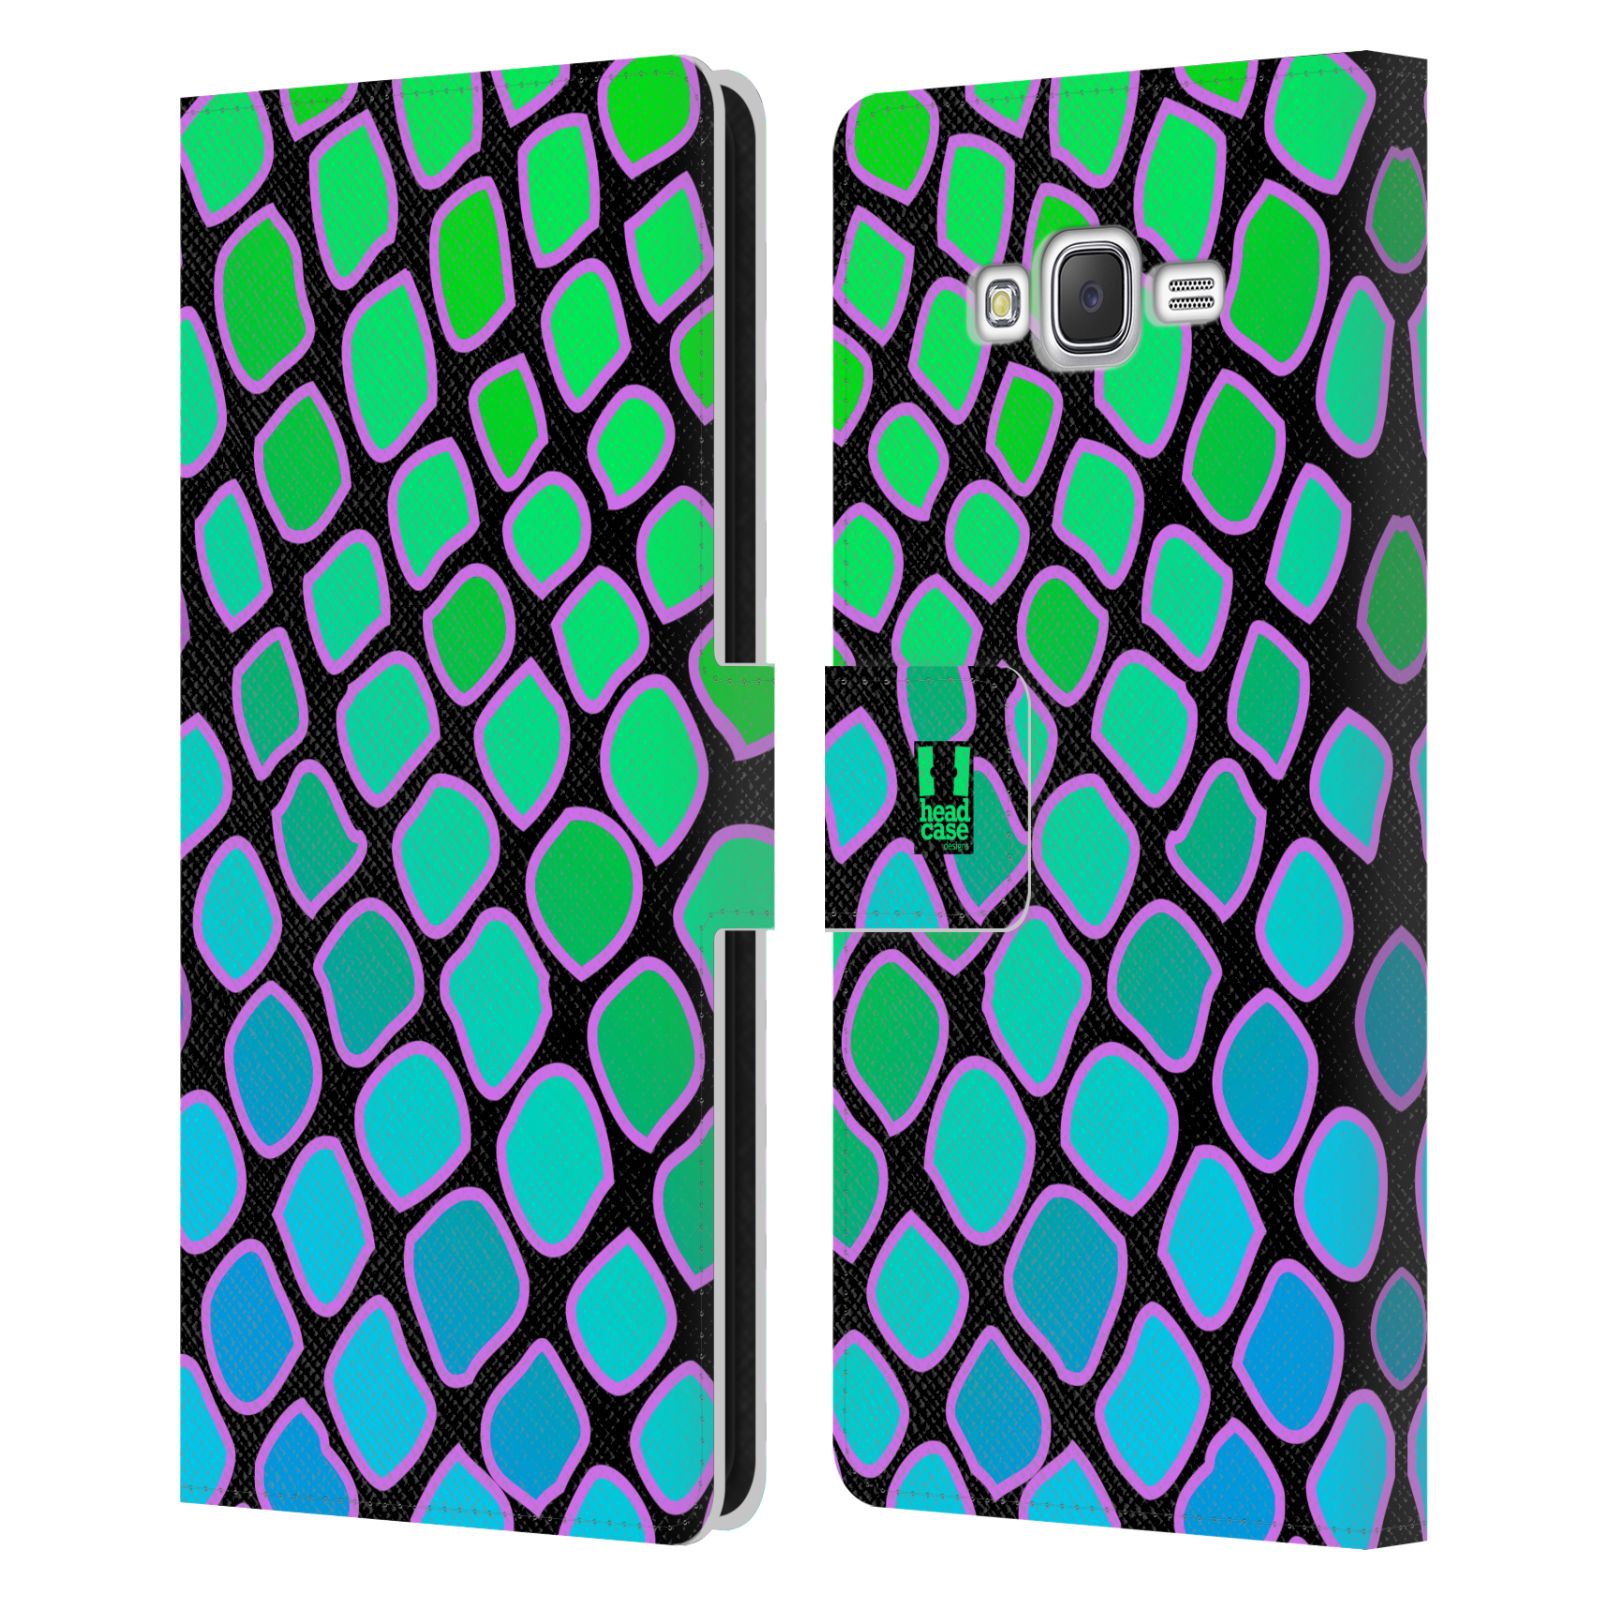 HEAD CASE Flipové pouzdro pro mobil Samsung Galaxy J7, J700 Zvířecí barevné vzory vodní had modrá a zelená barva AQUA